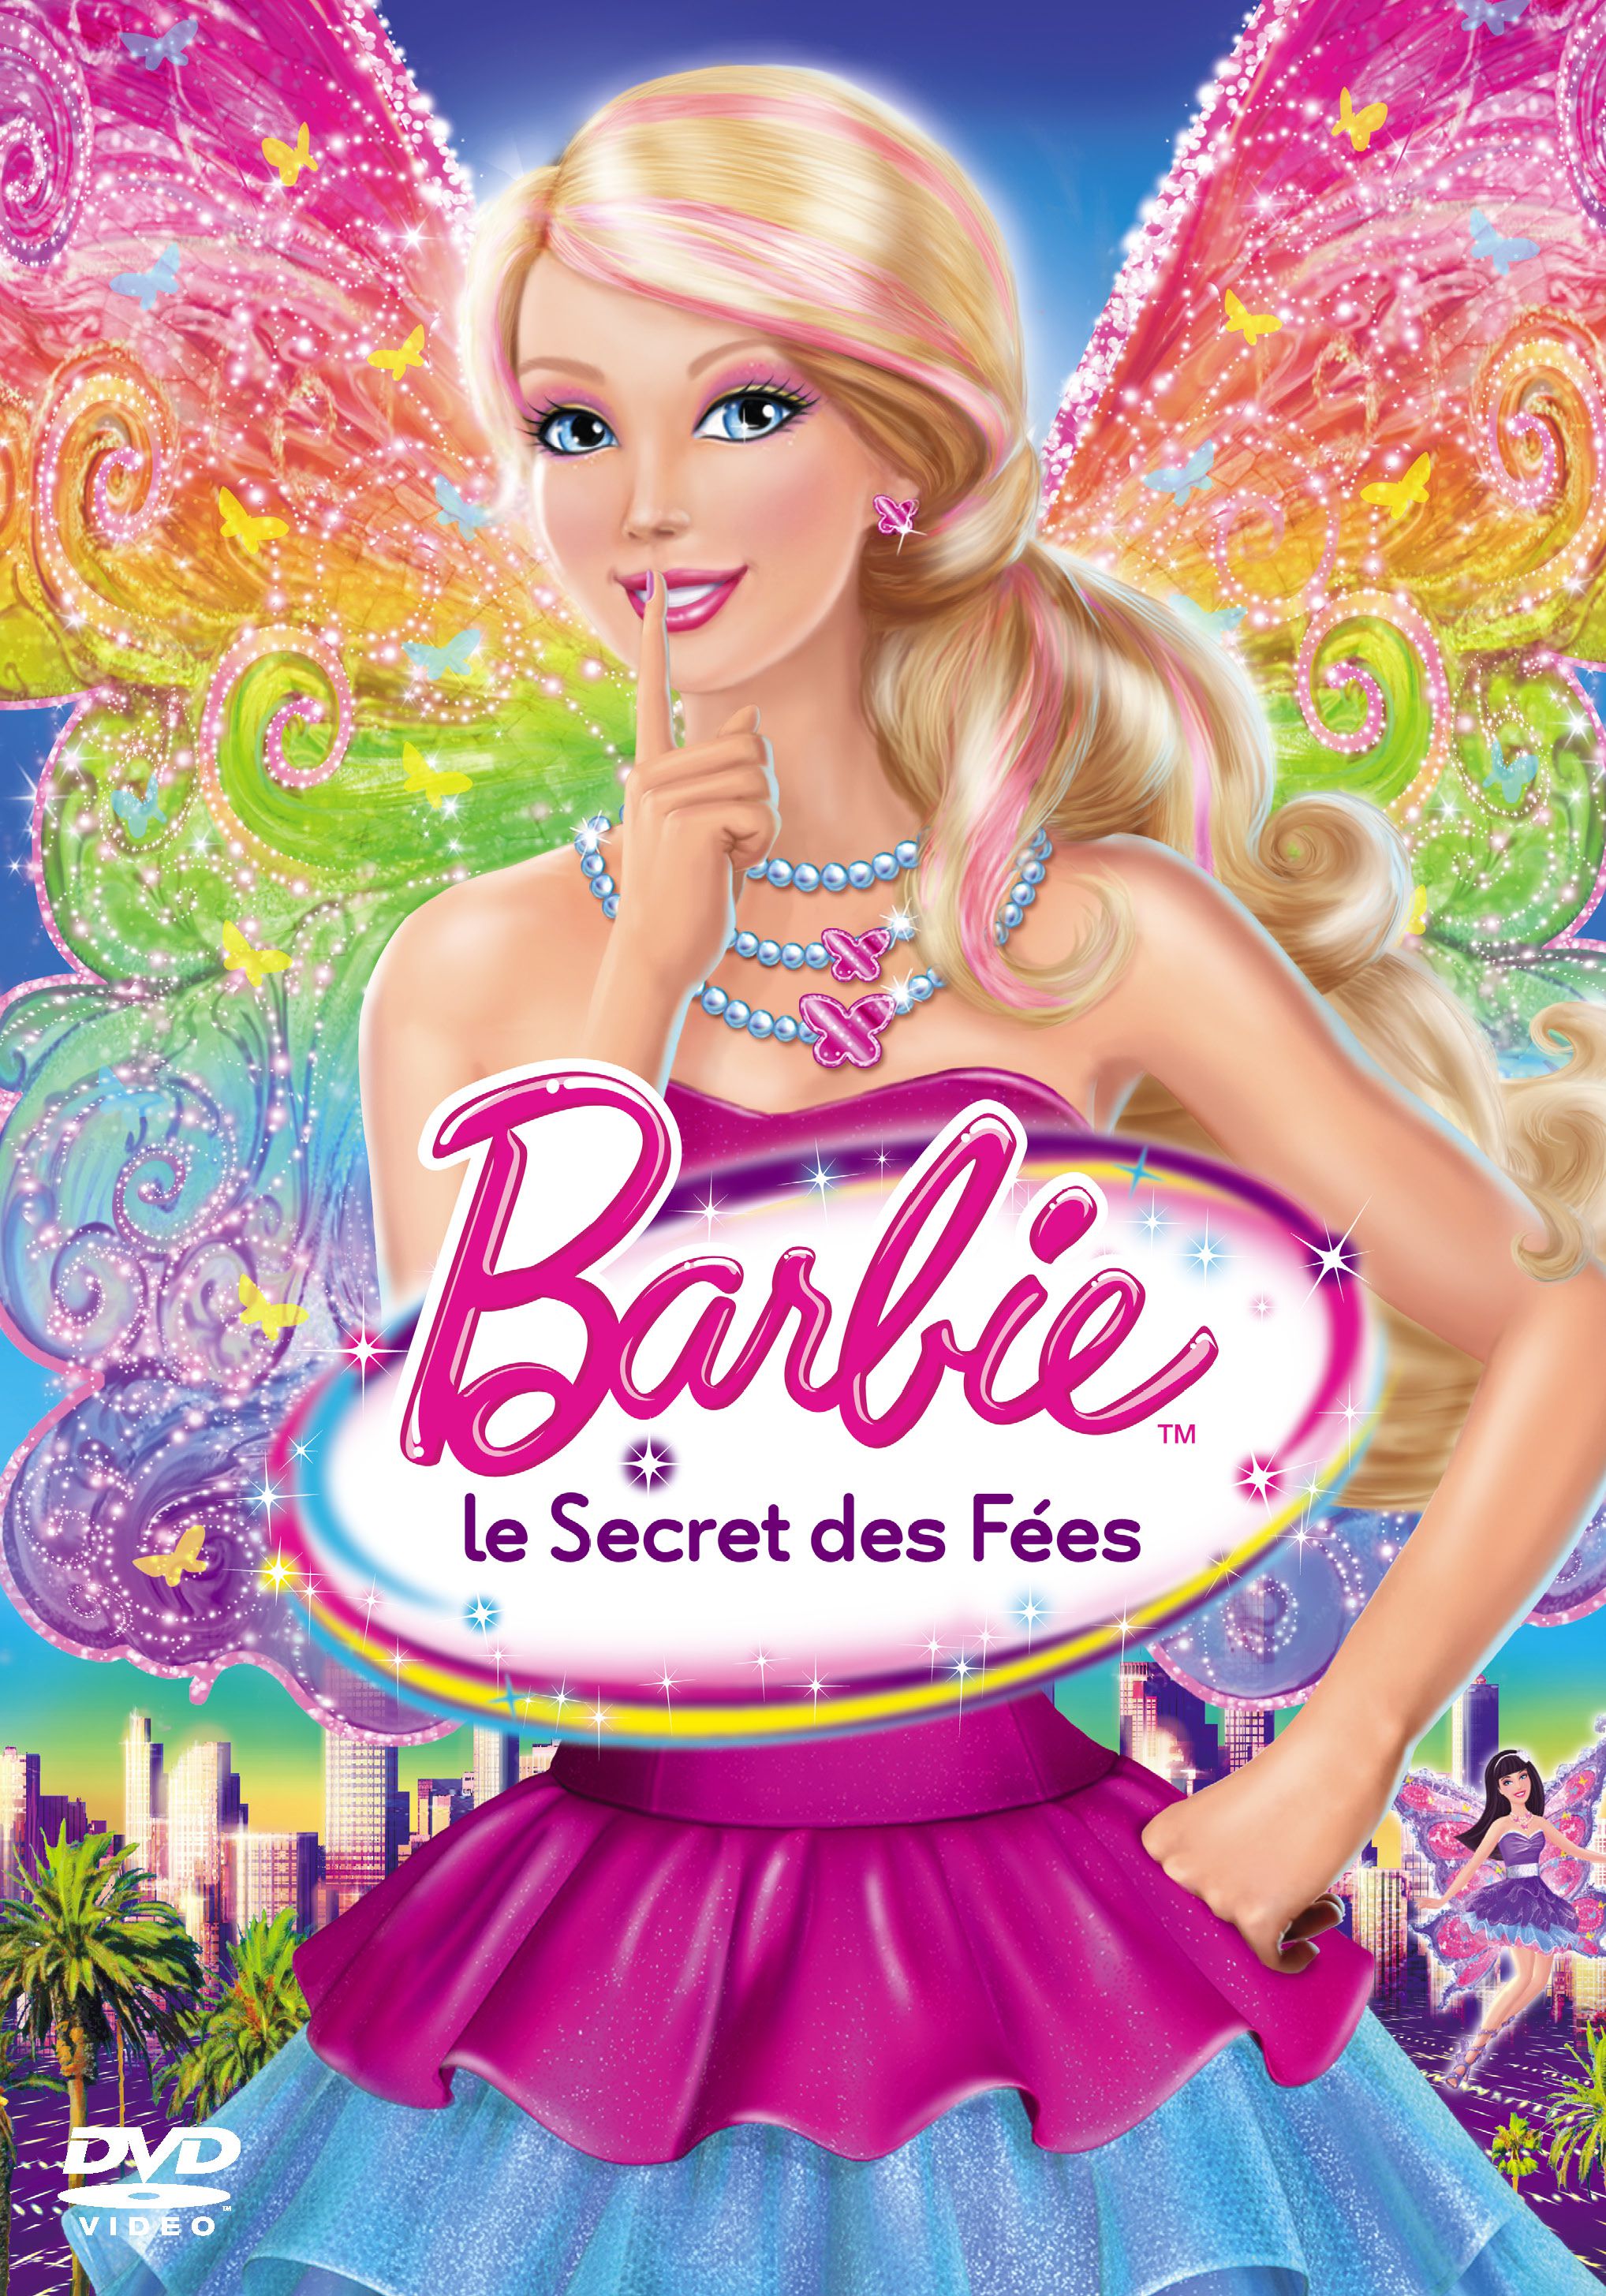 Barbie et le Secret des fées - Long-métrage d'animation (2011) streaming VF gratuit complet